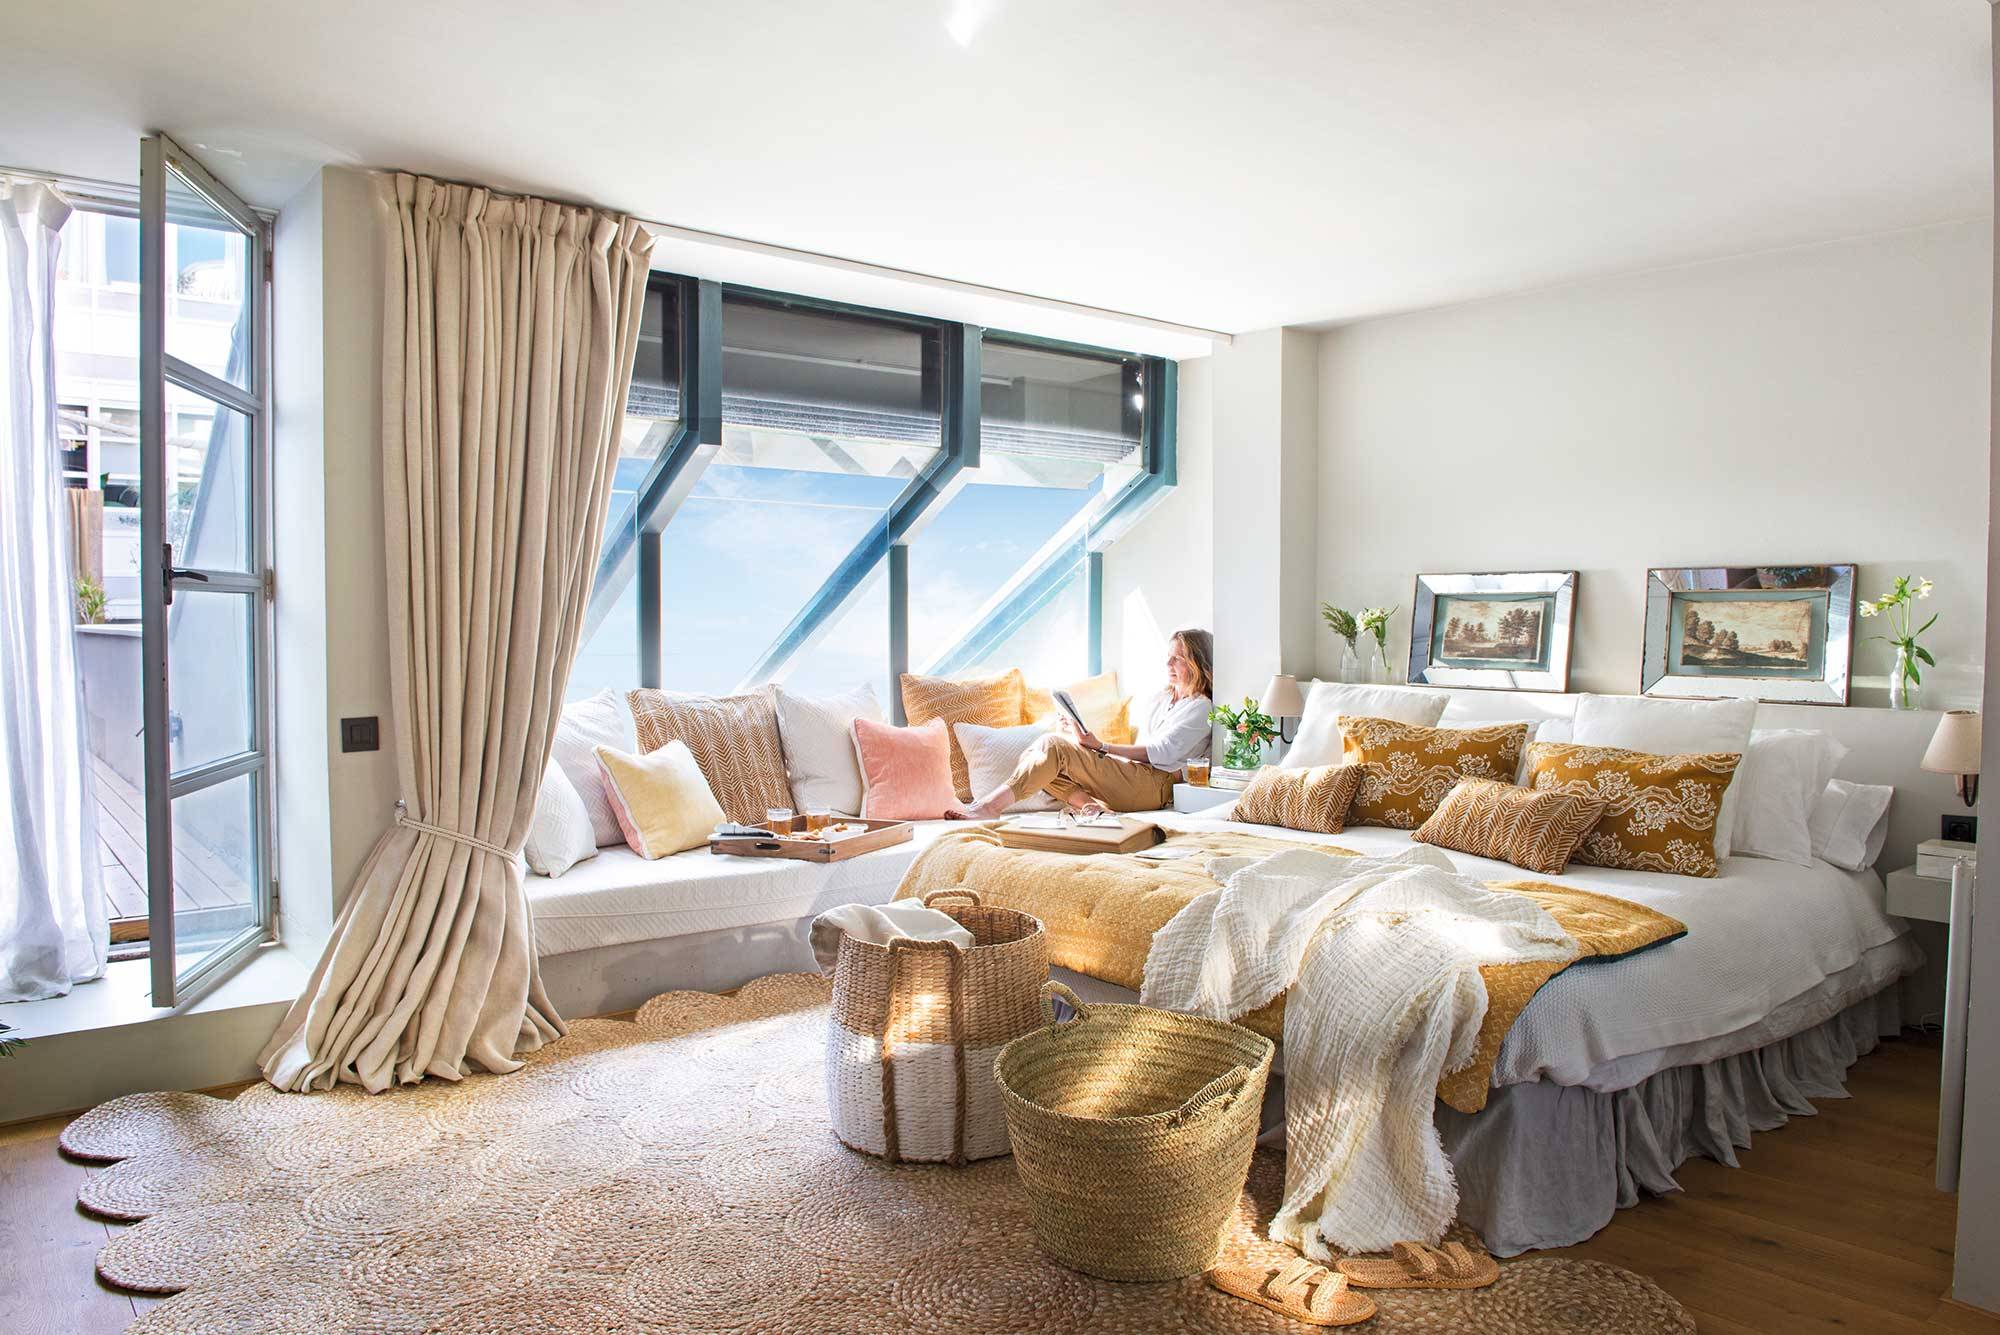 Dormitorio primaveral con banco bajo la ventana, cortinas largas en beige y cestas de fibra a los pies